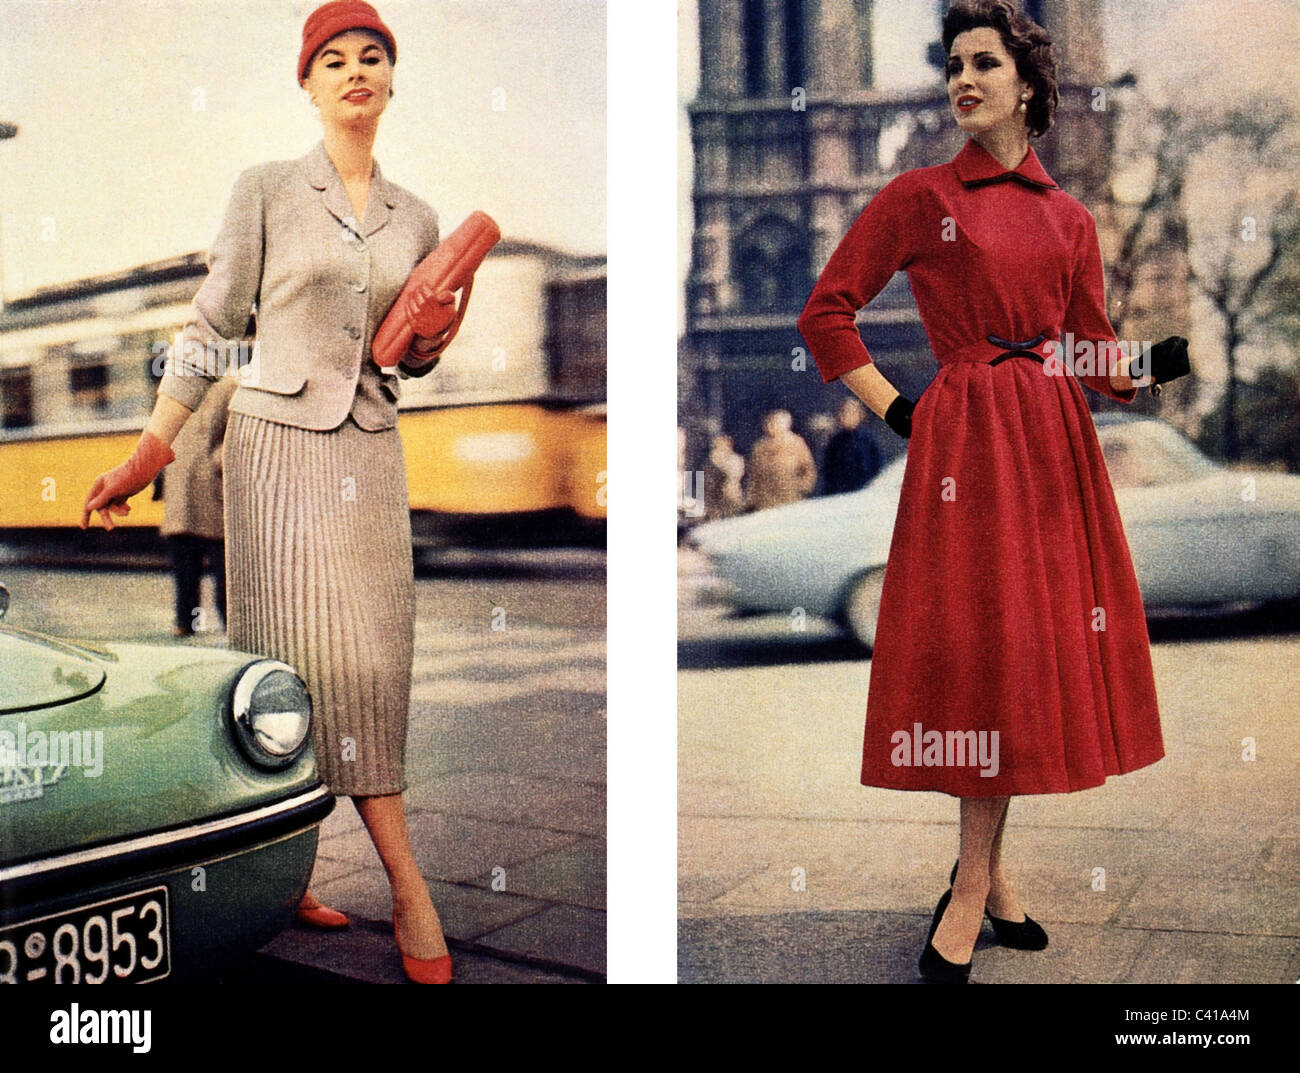 Mode, années 1950, mode pour femmes, deux femmes sur des images publicitaires, vers 1957, droits additionnels-Clearences-non disponible Banque D'Images